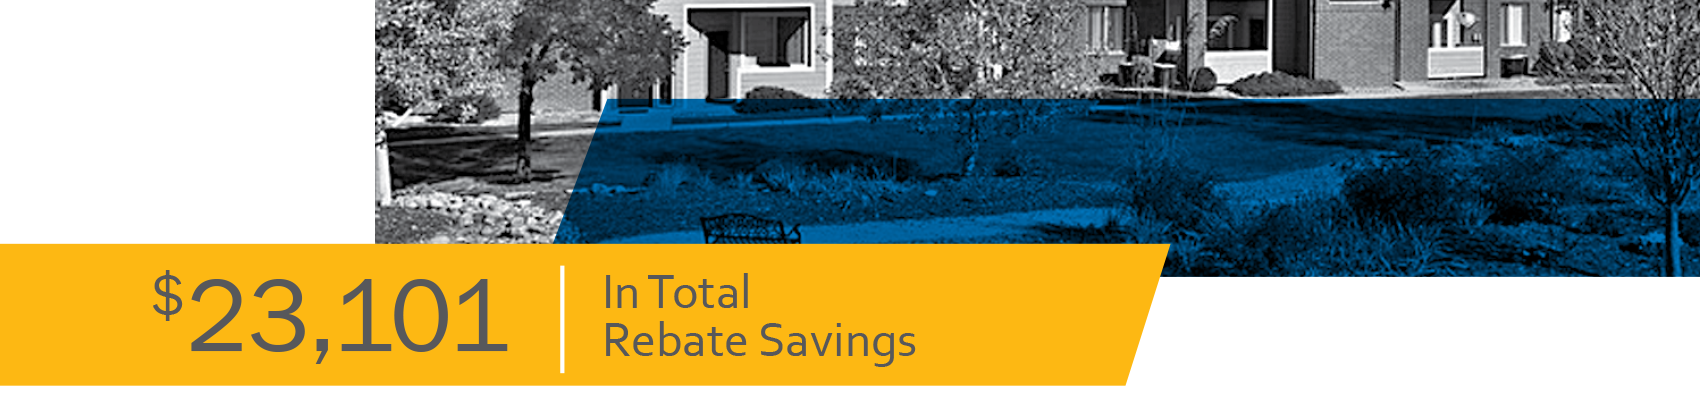 $23,101 In Total Rebate Savings